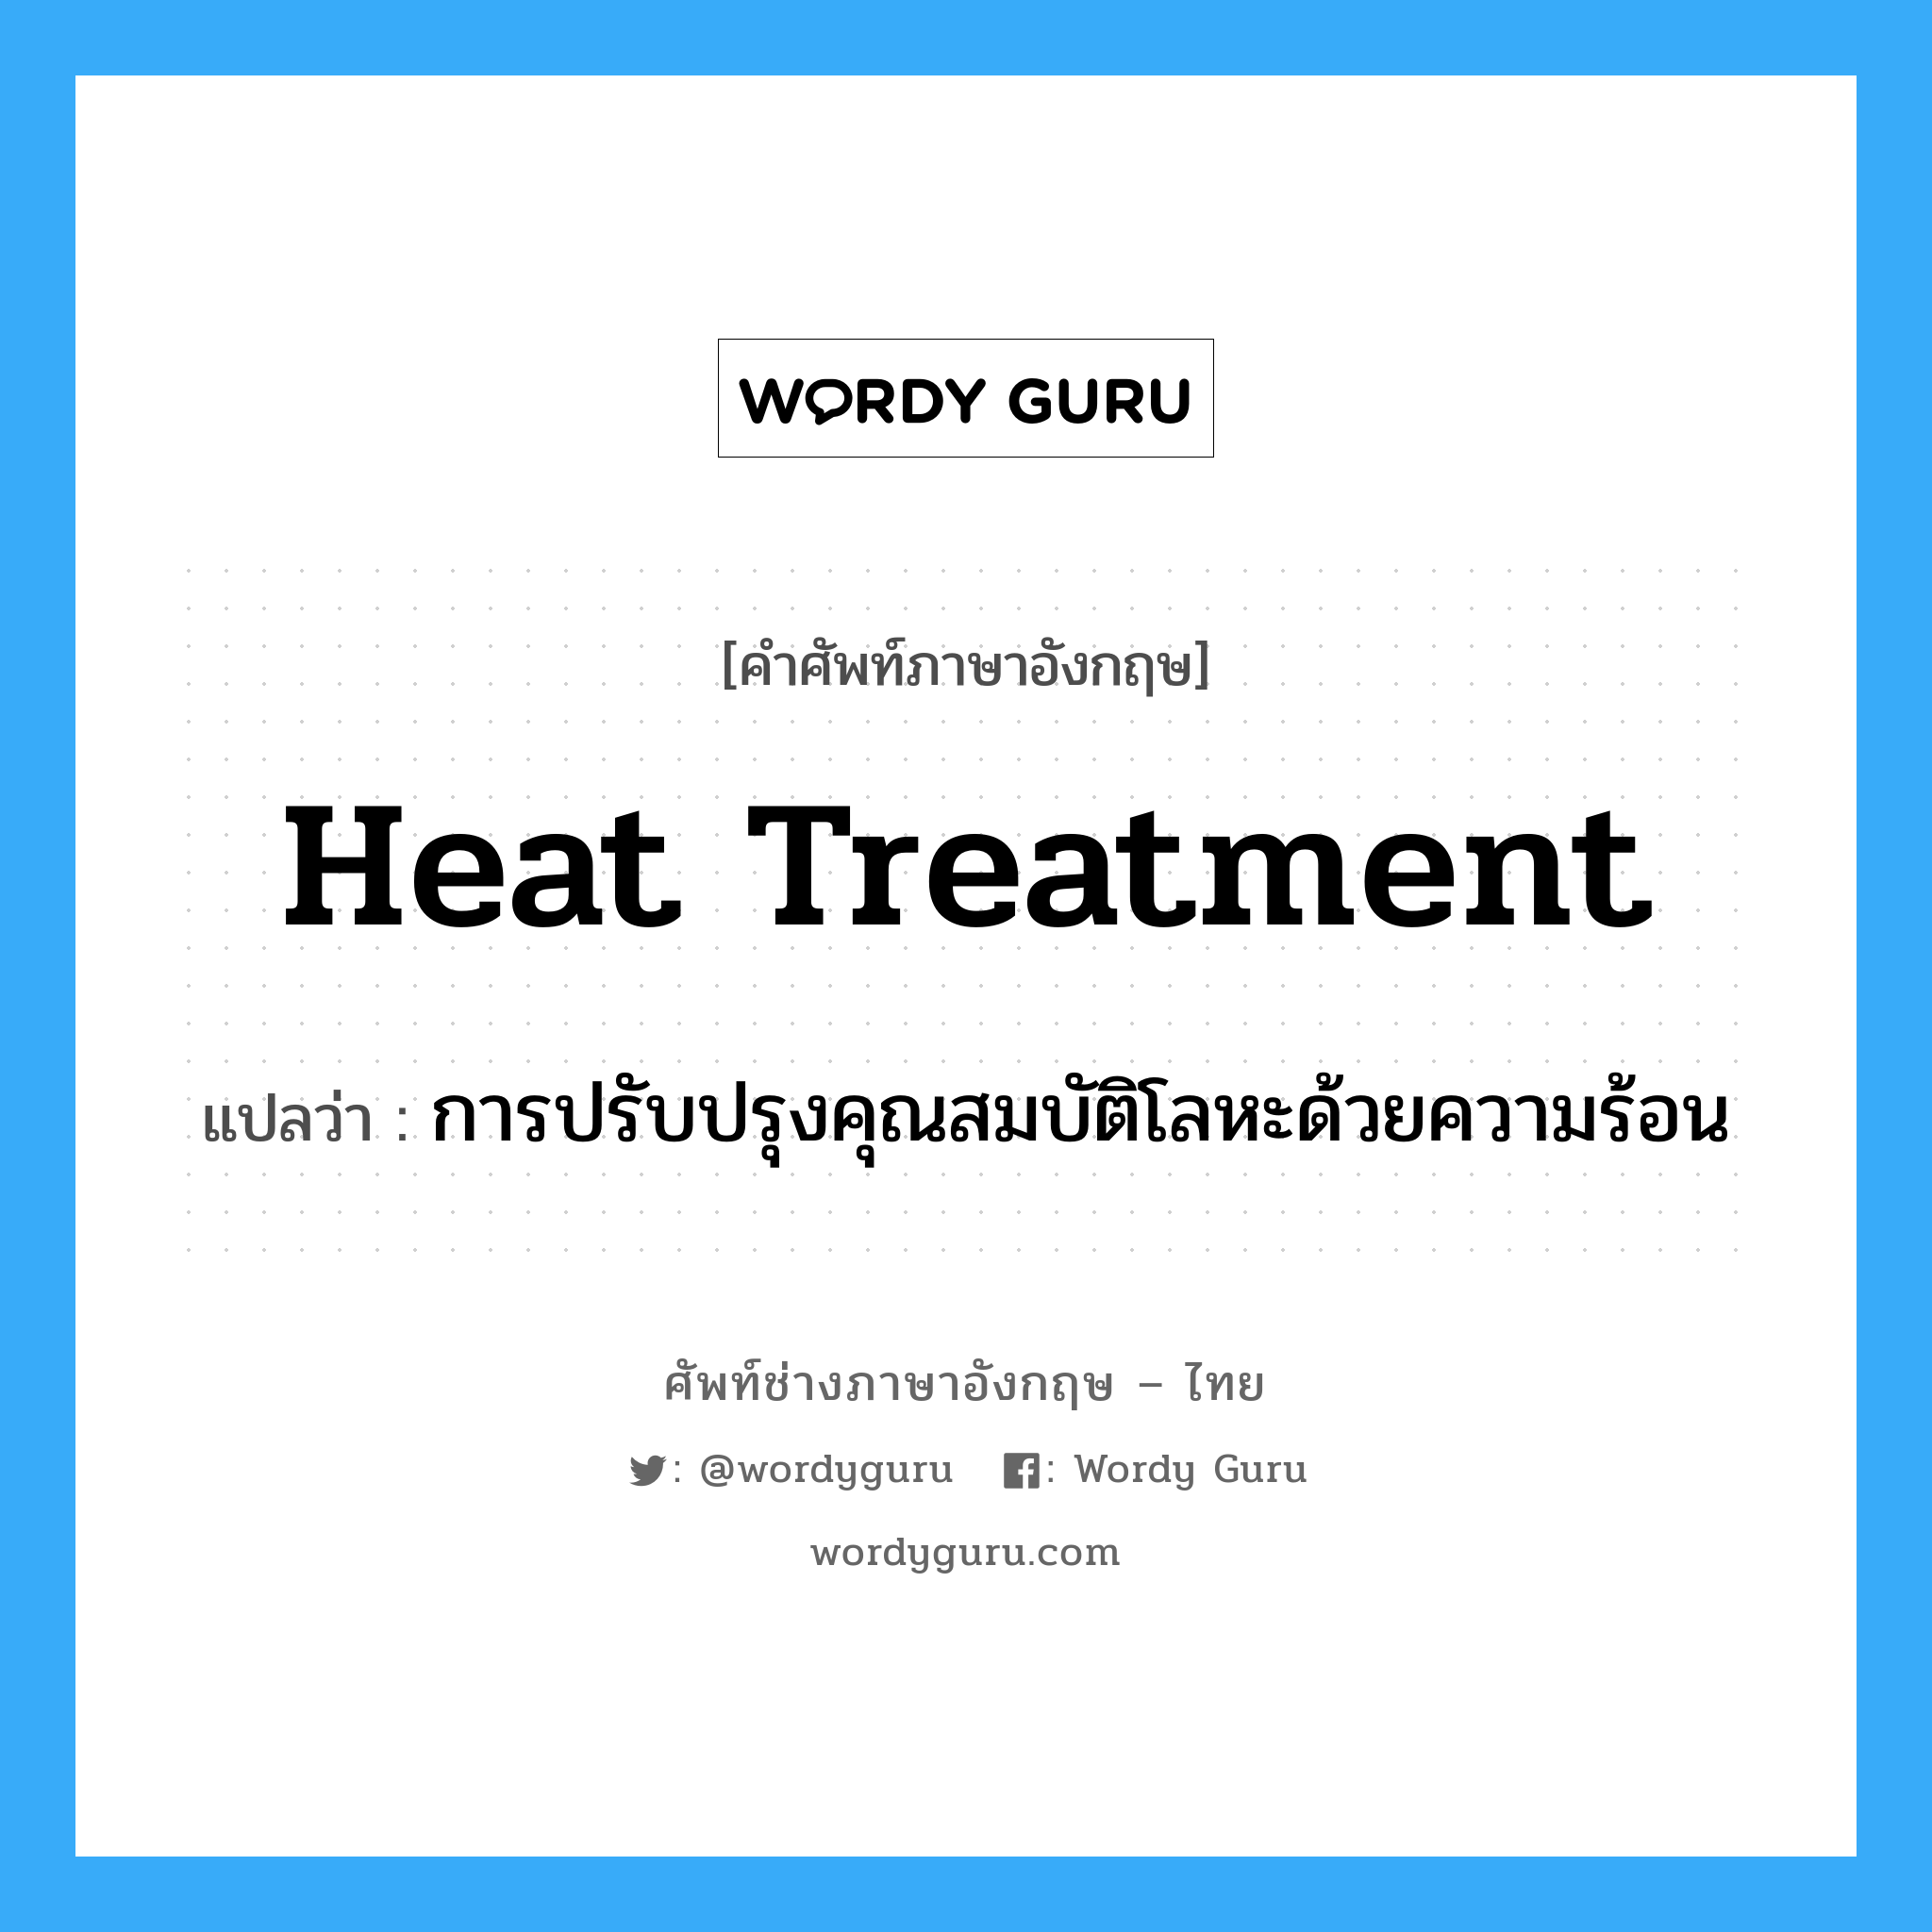 การปรับปรุงคุณสมบัติโลหะด้วยความร้อน ภาษาอังกฤษ?, คำศัพท์ช่างภาษาอังกฤษ - ไทย การปรับปรุงคุณสมบัติโลหะด้วยความร้อน คำศัพท์ภาษาอังกฤษ การปรับปรุงคุณสมบัติโลหะด้วยความร้อน แปลว่า heat treatment